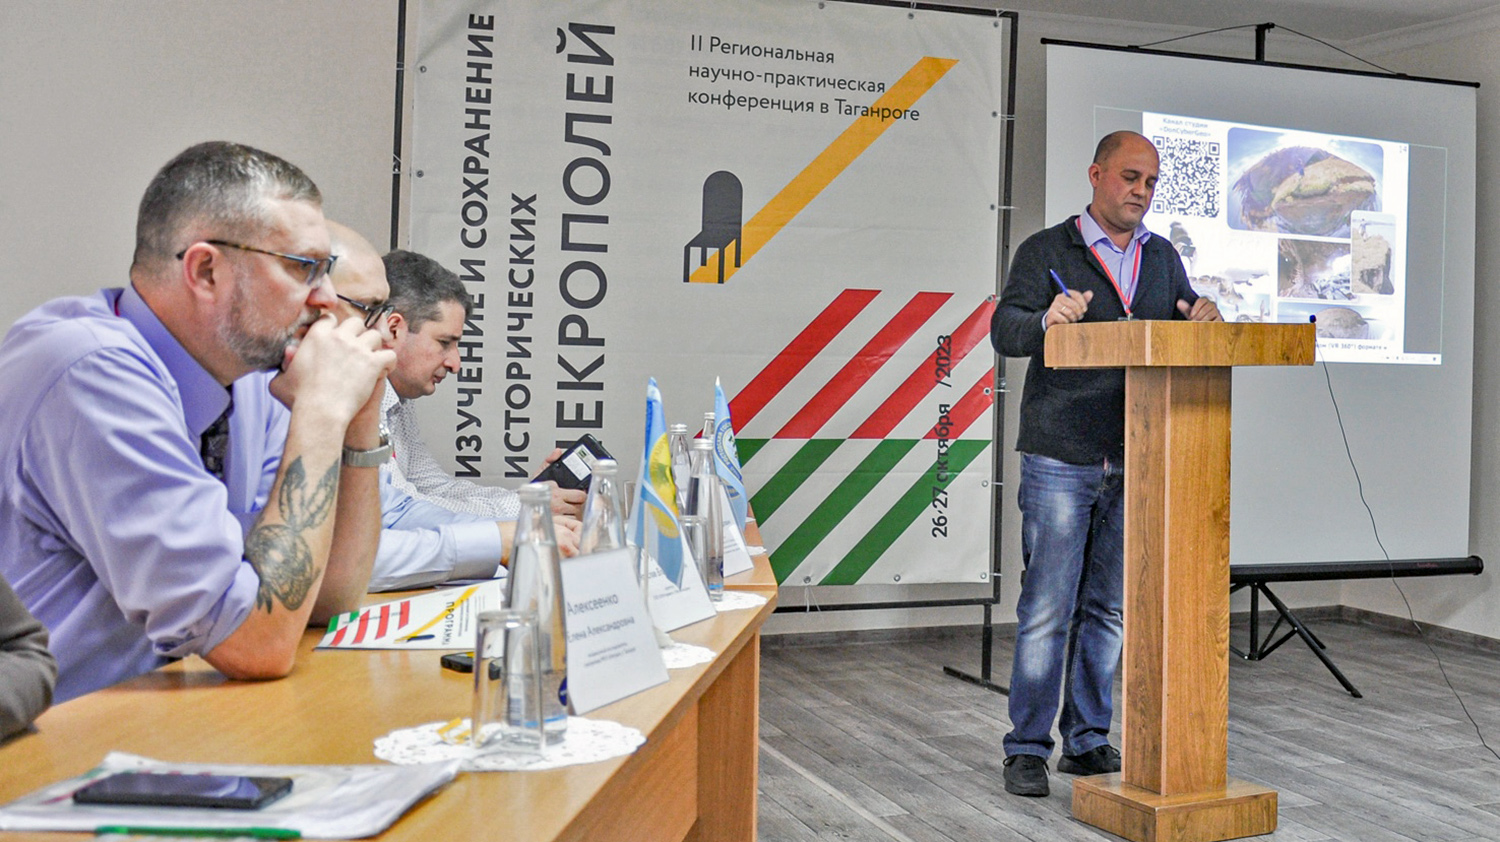 Проблемы некрополей обсудили в Таганроге